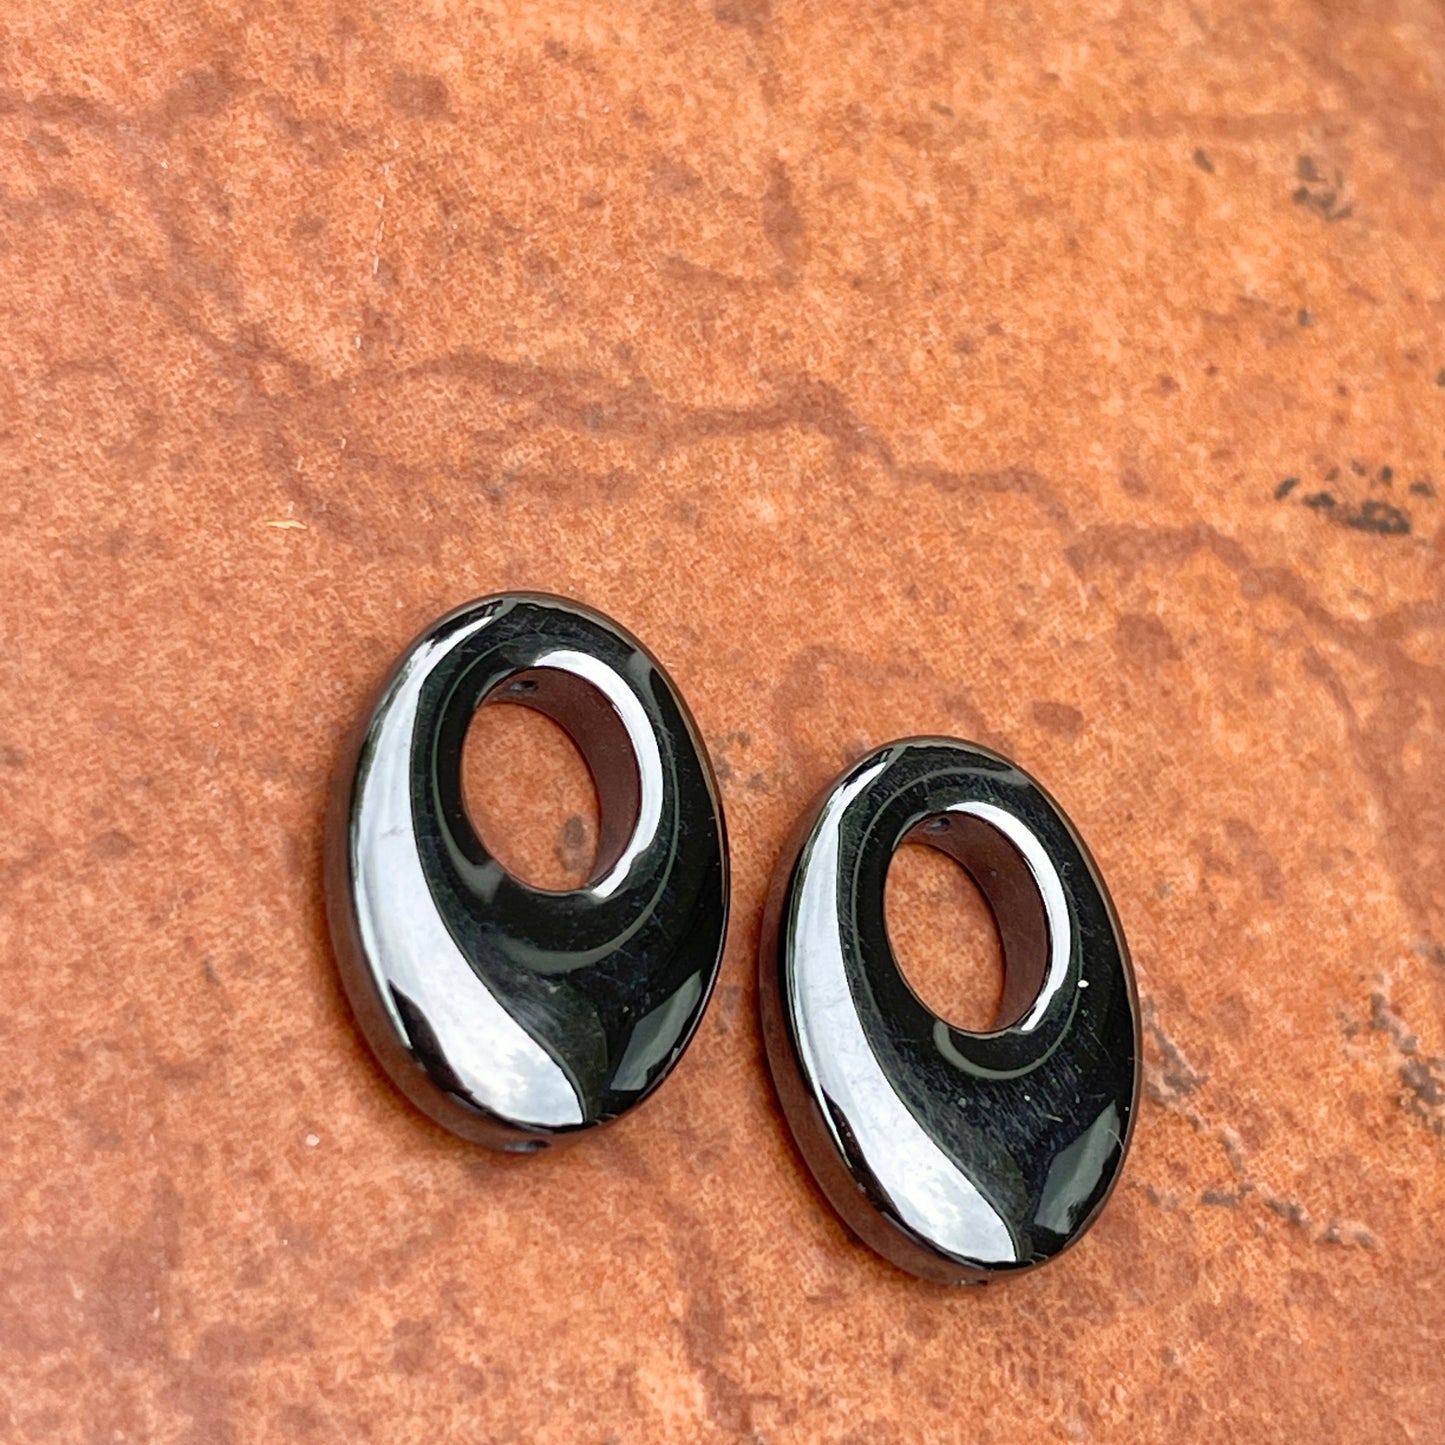 Genuine Hematite Oval Mini Disc Gemstone Earring Charms